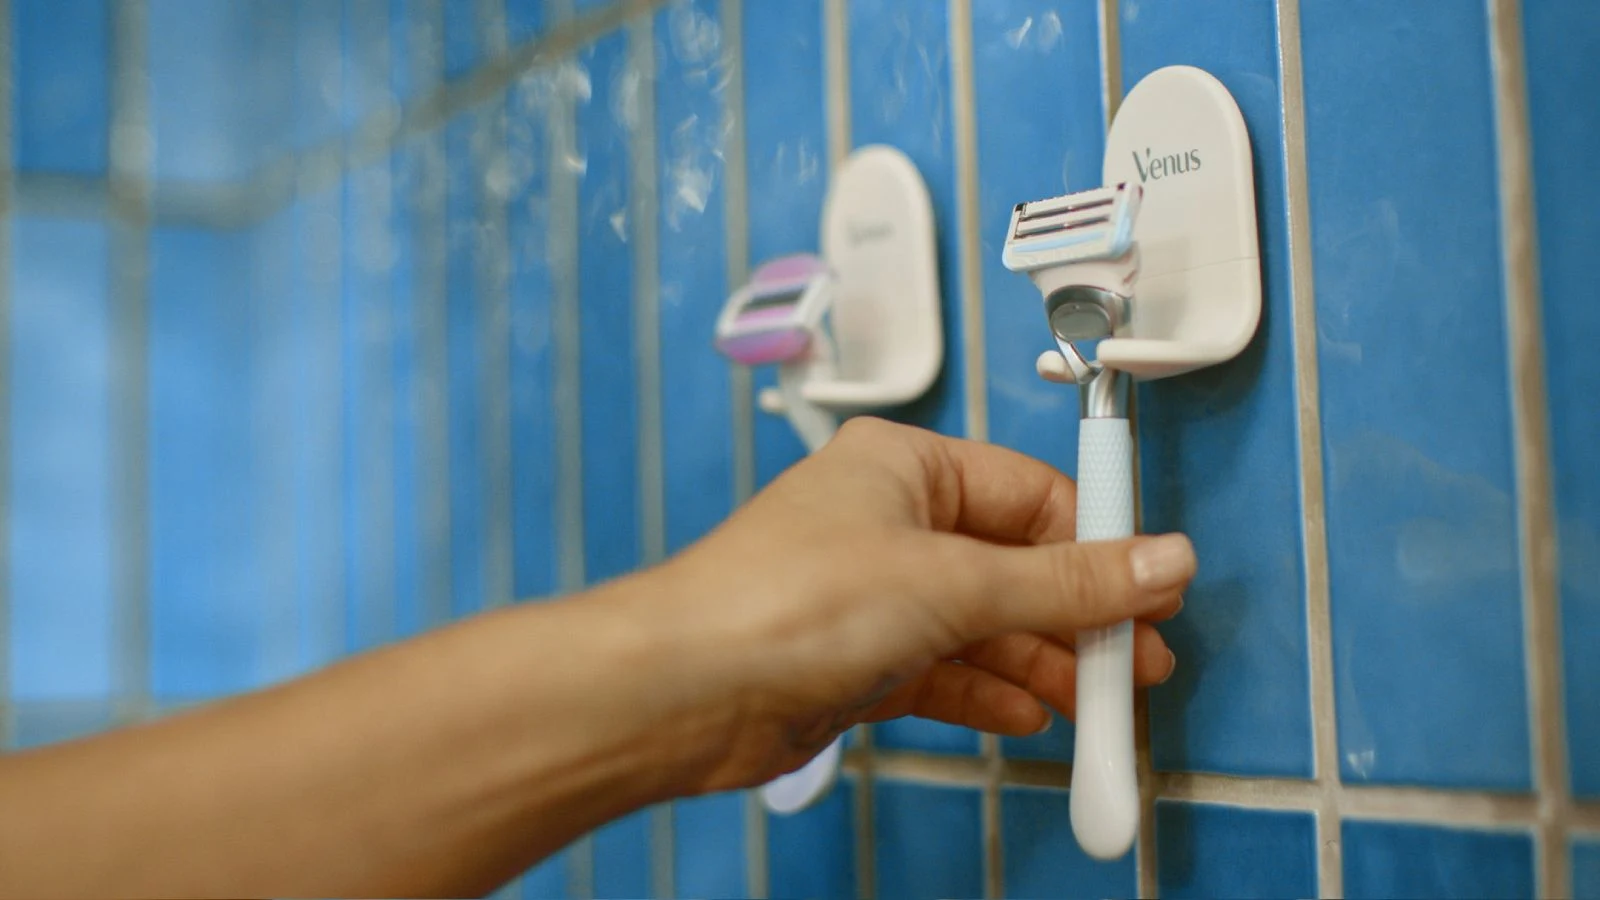 Mano de una mujer seleccionando una rasuradora Gillette Venus para depilarse la zona íntima dentro de la regadera o el baño